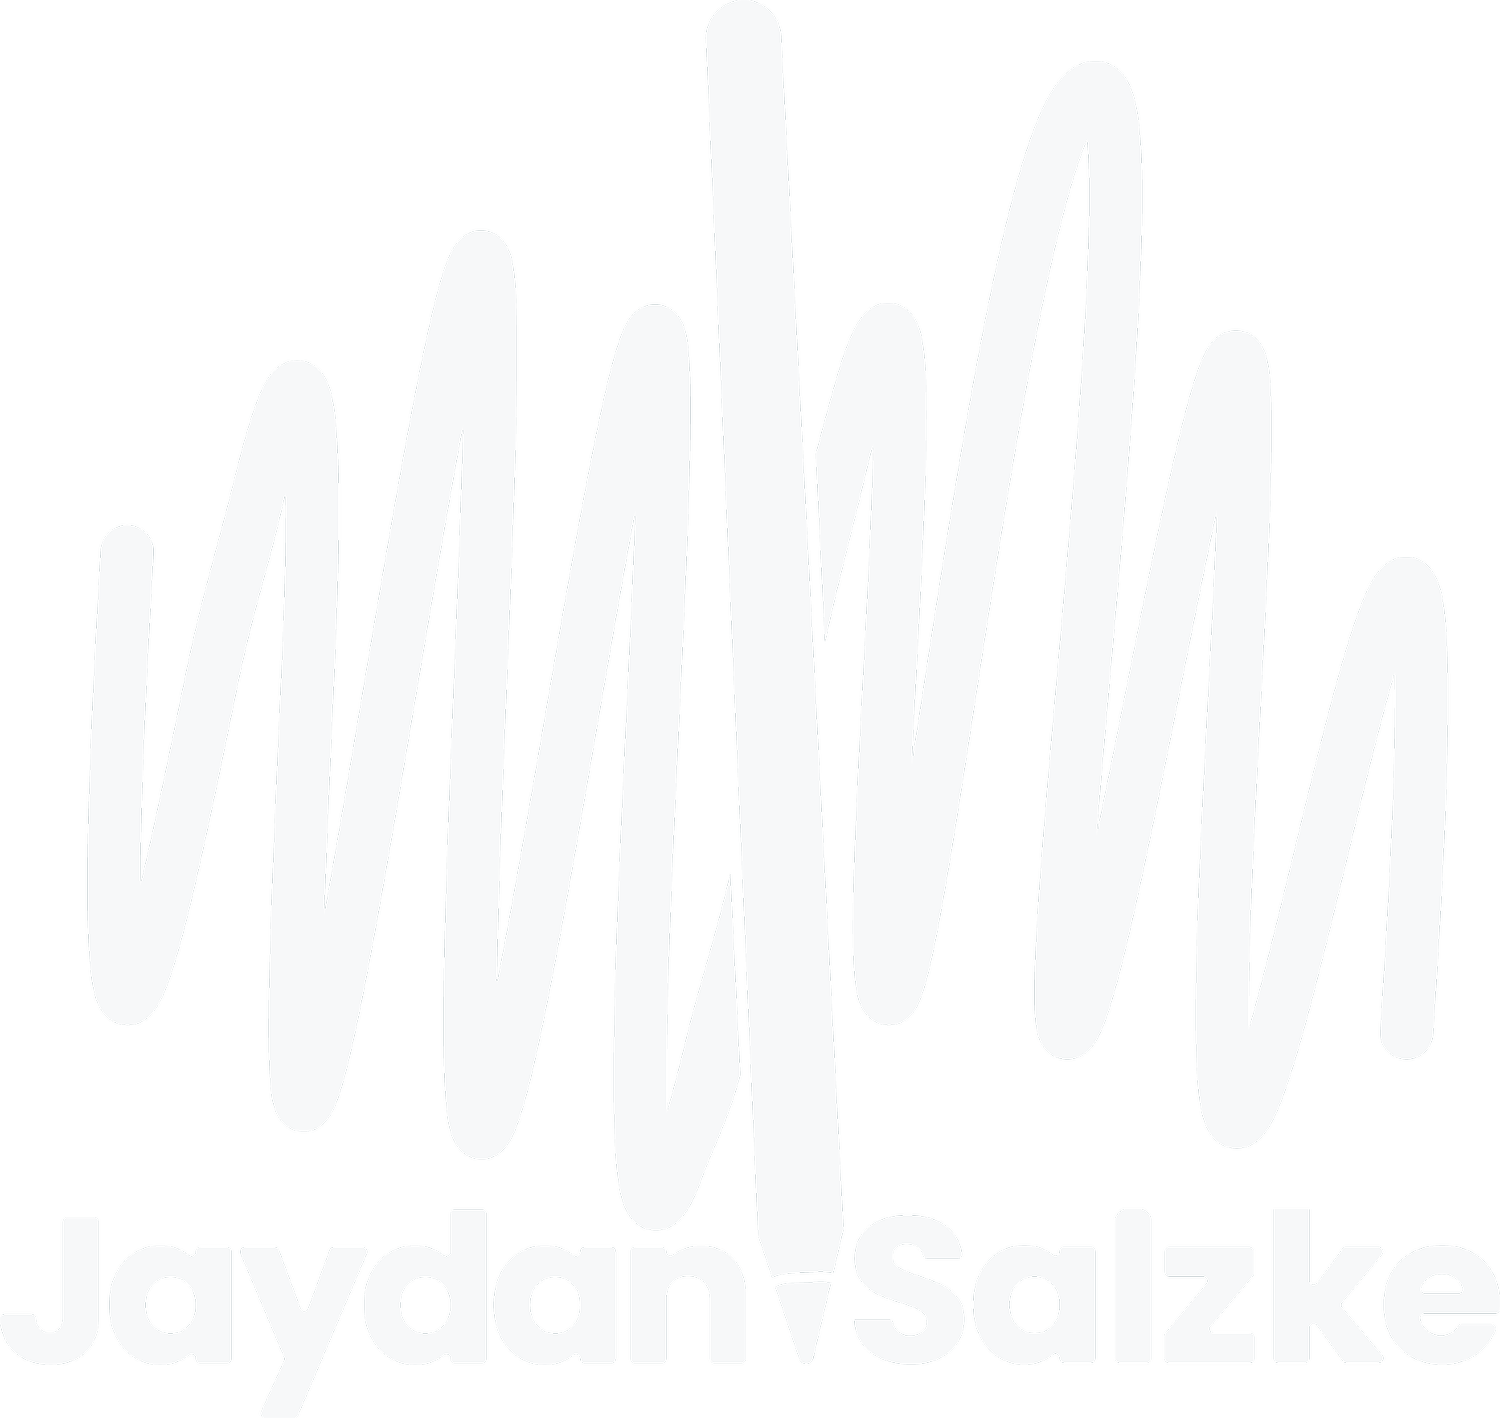 Jaydan Salzke